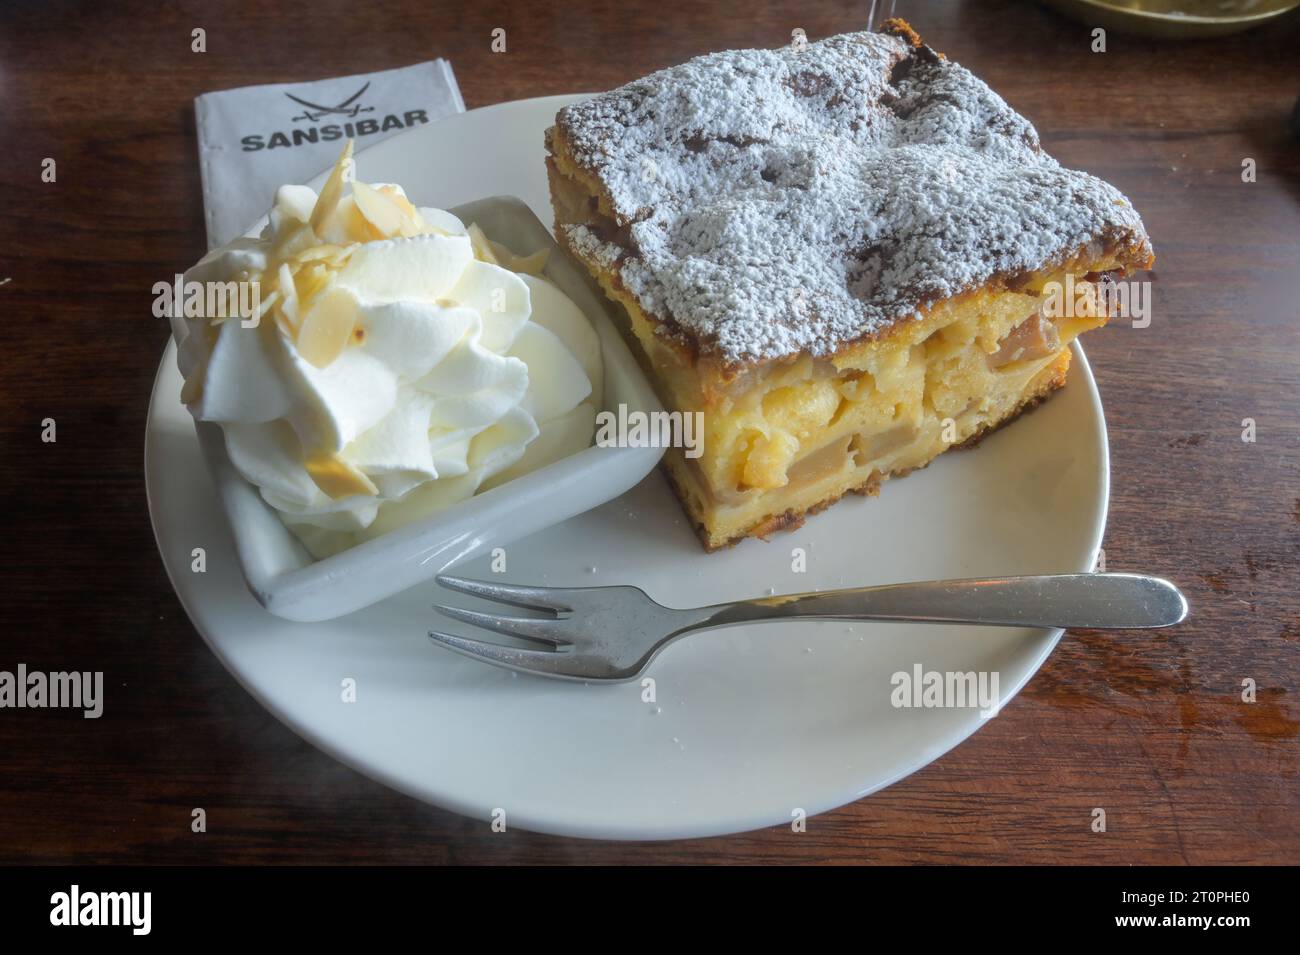 Apfelkuchen mit Sahne, Restaurant Sansibar, Hörnum, Sylt, Schleswig-Holstein, Deutschland Stock Photo